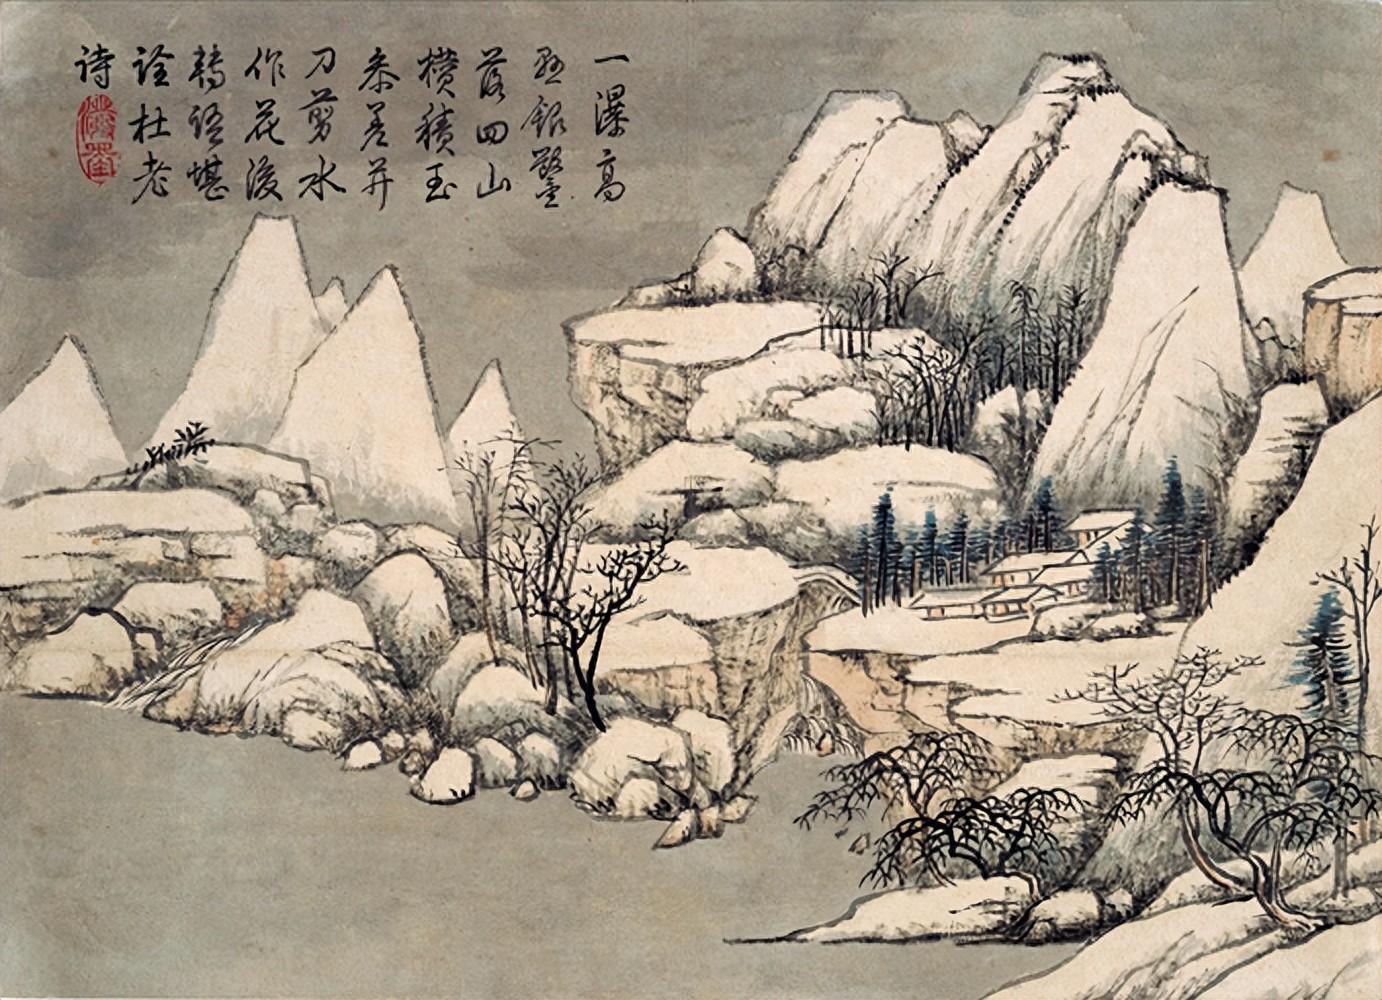 冬日题材山水画作品高清图片欣赏